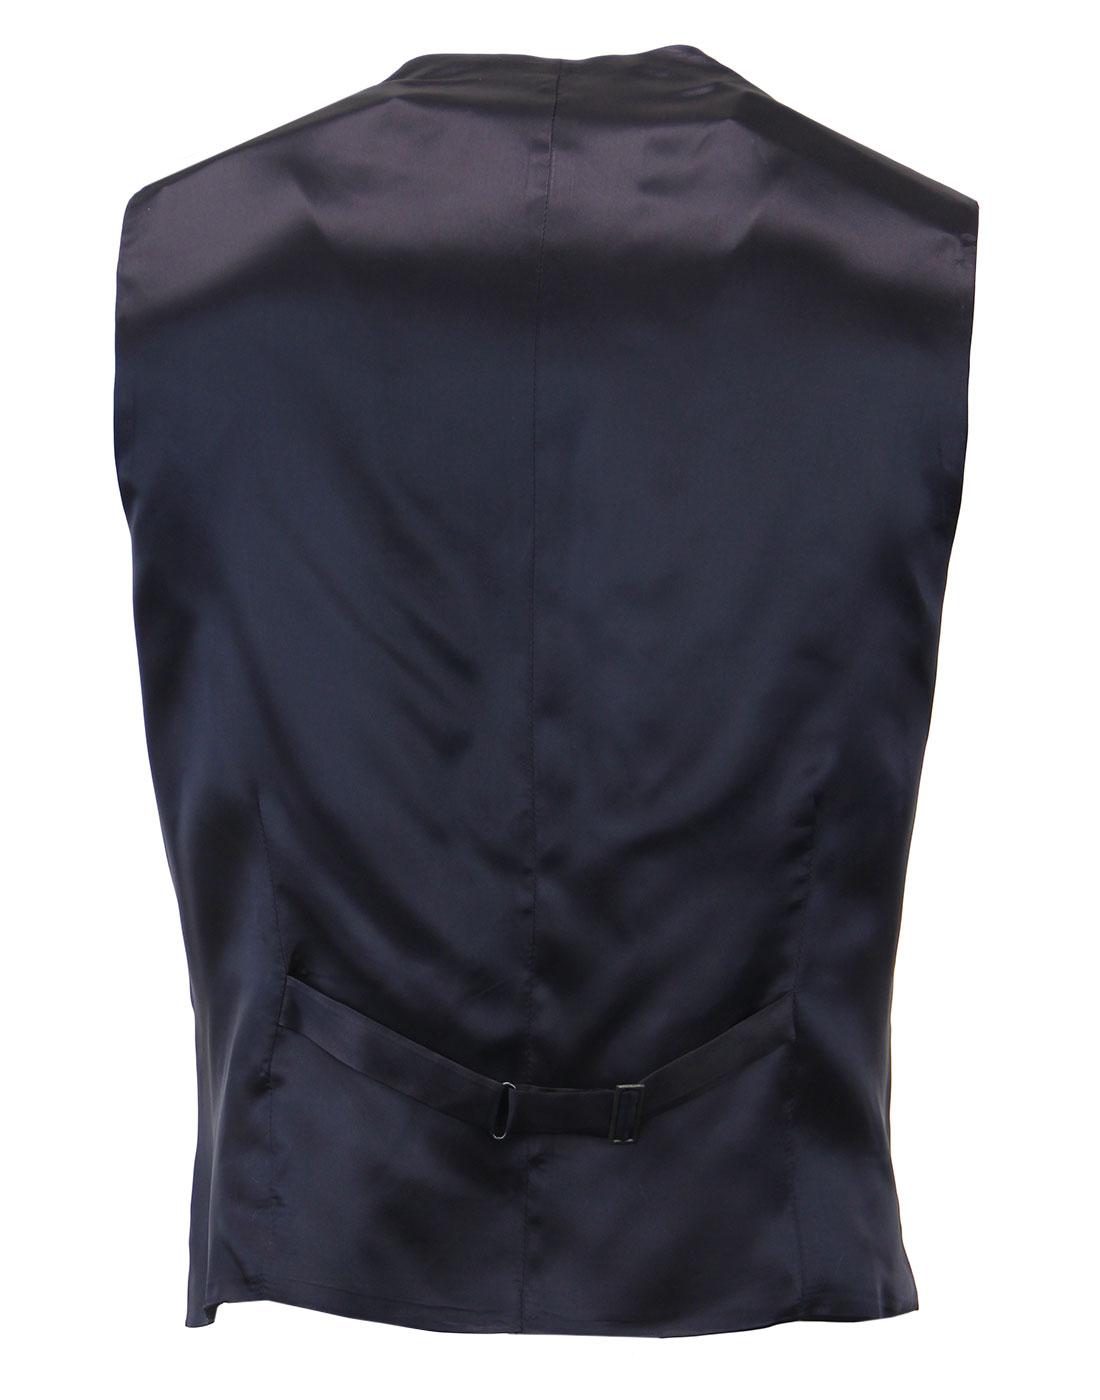 Madcap England Retro Mod 3 Button Blue Mohair Suit